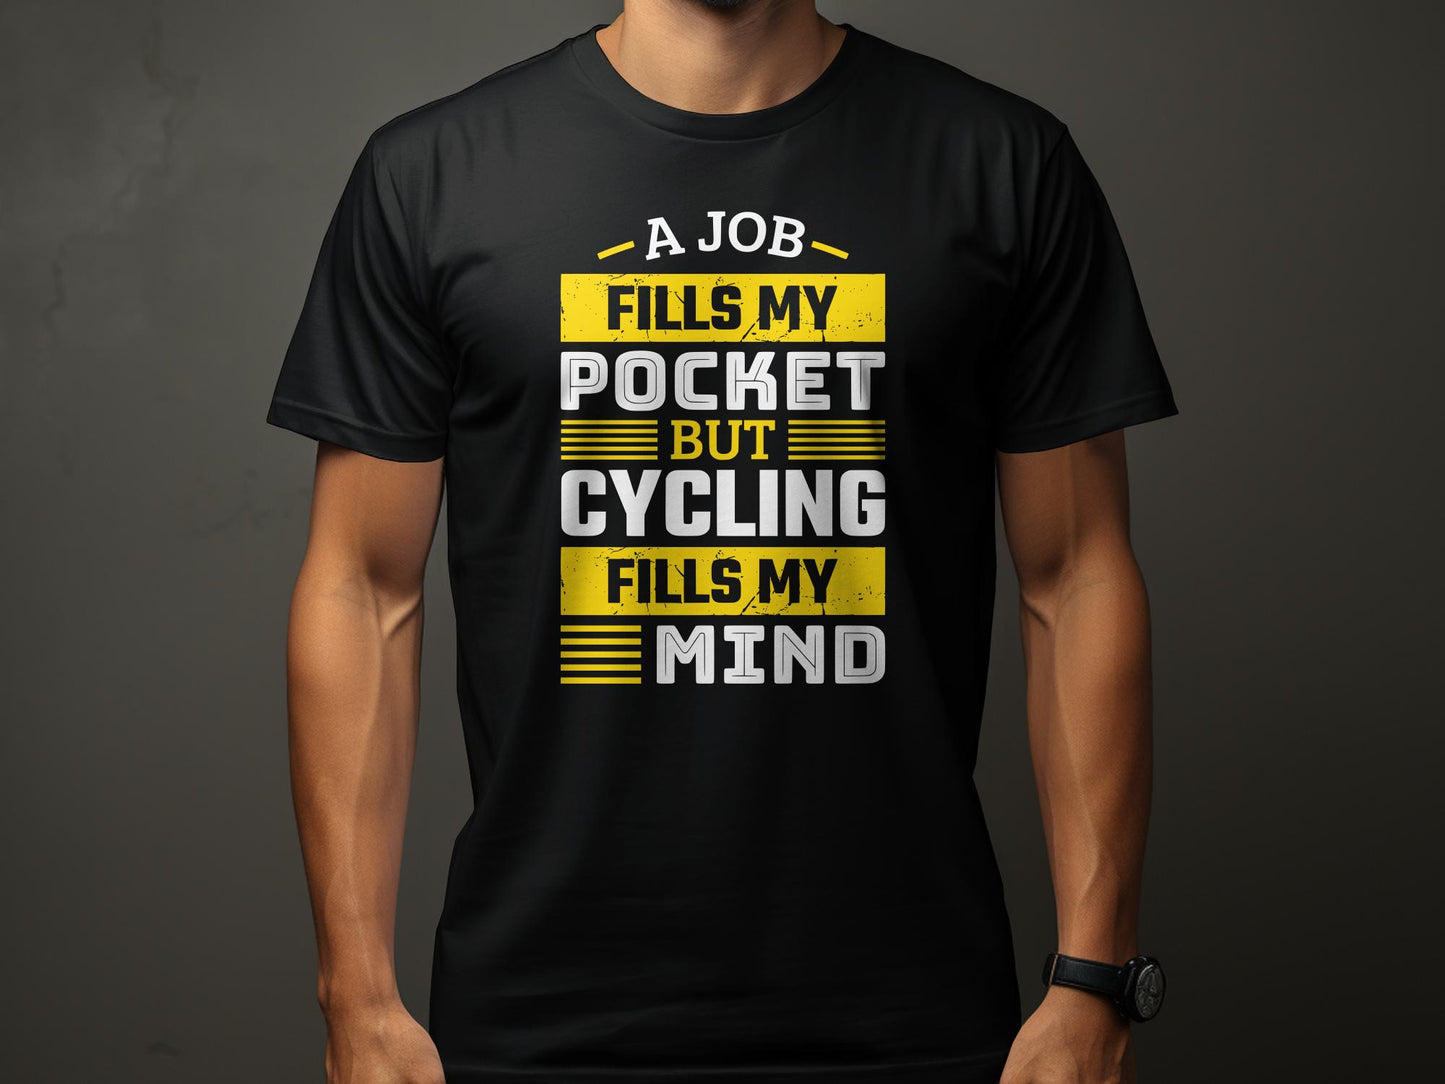 Un trabajo llena mi bolsillo pero el ciclismo llena mi mente